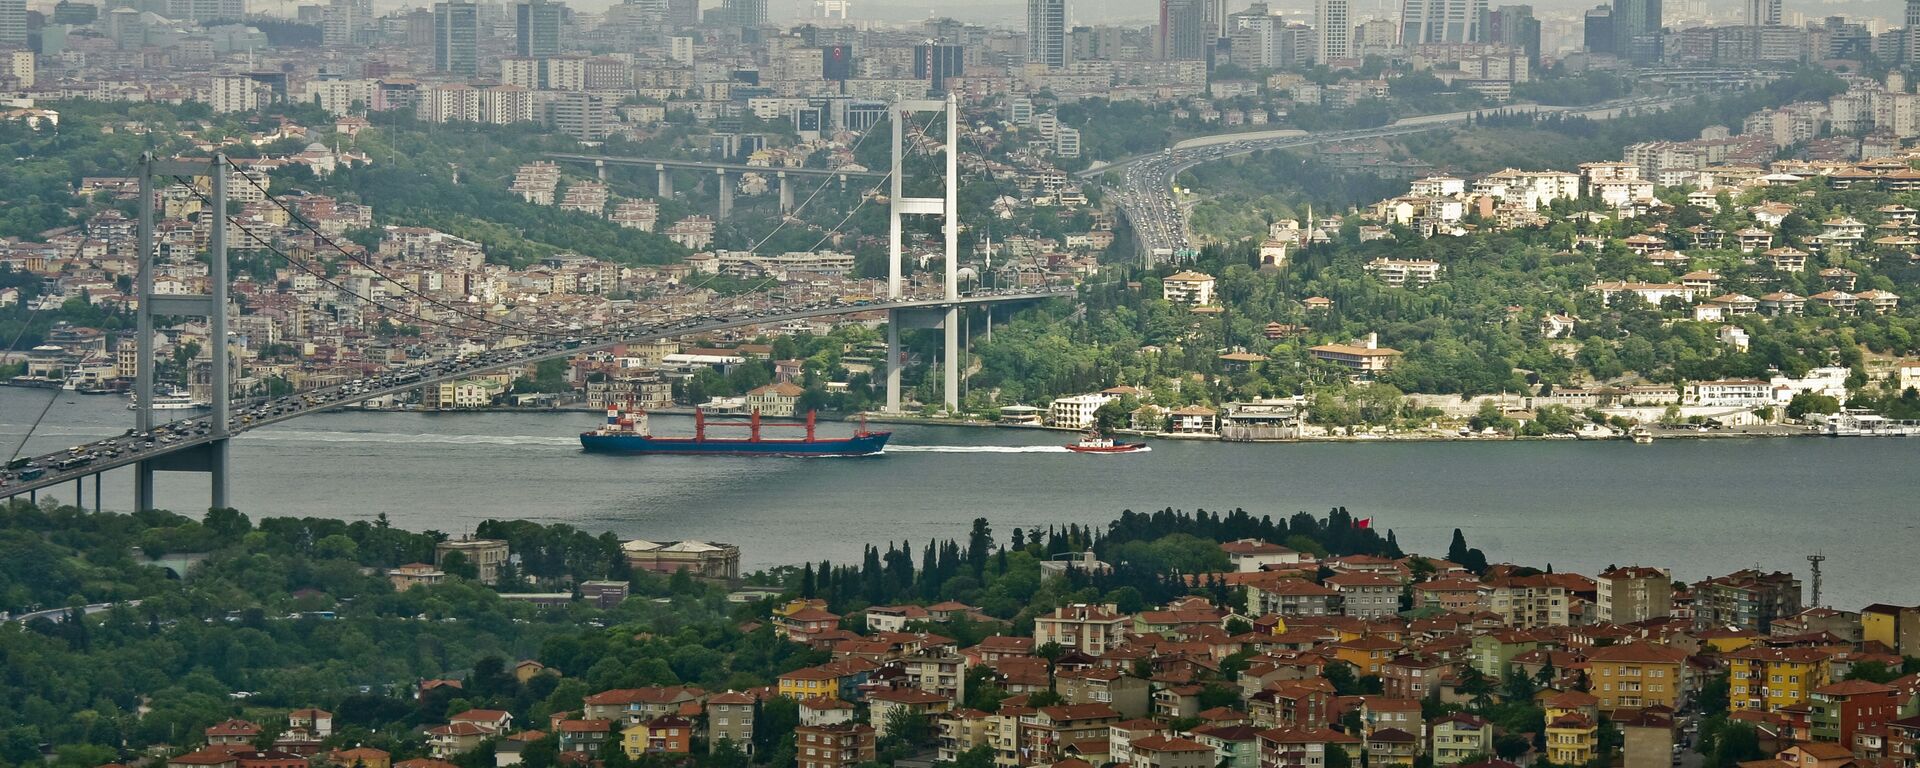 Мост через пролив Босфор, соединяющий азиатскую и европейскую части города Стамбула. - Sputnik Абхазия, 1920, 26.03.2022